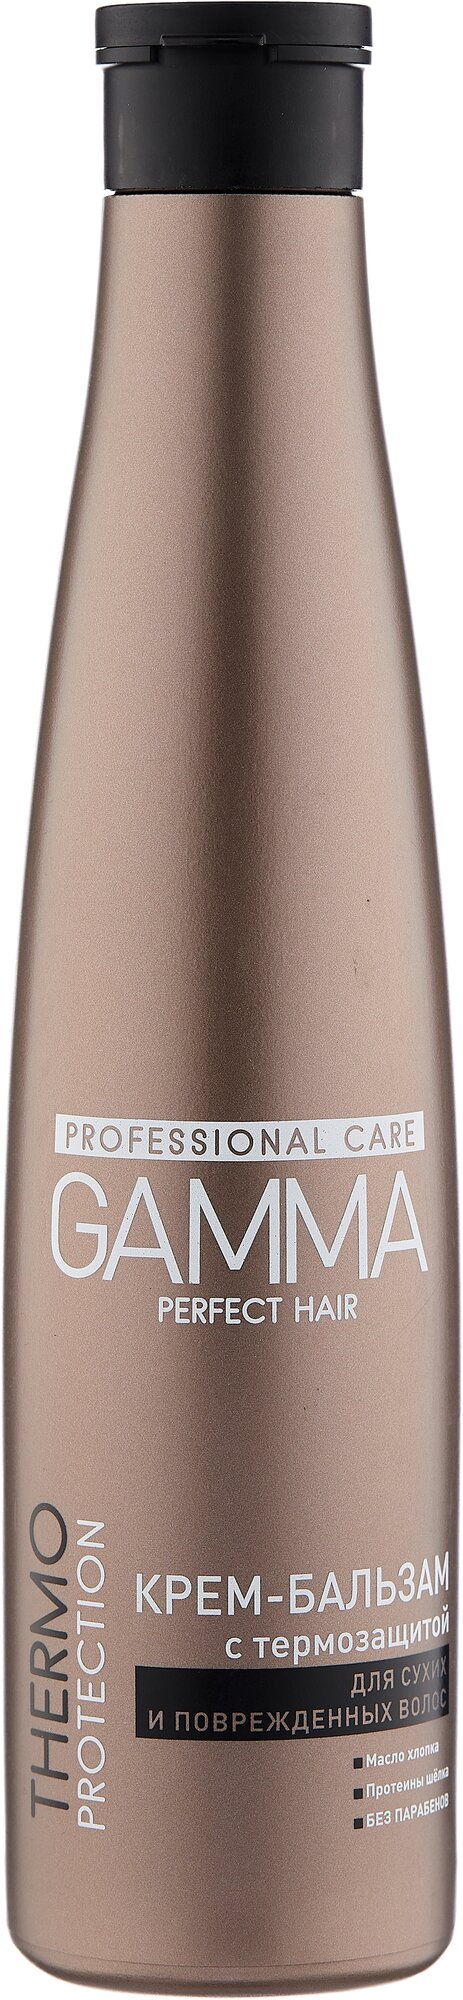 GAMMA крем-бальзам для волос Perfect Hair с термозащитой для сухих и поврежденных волос